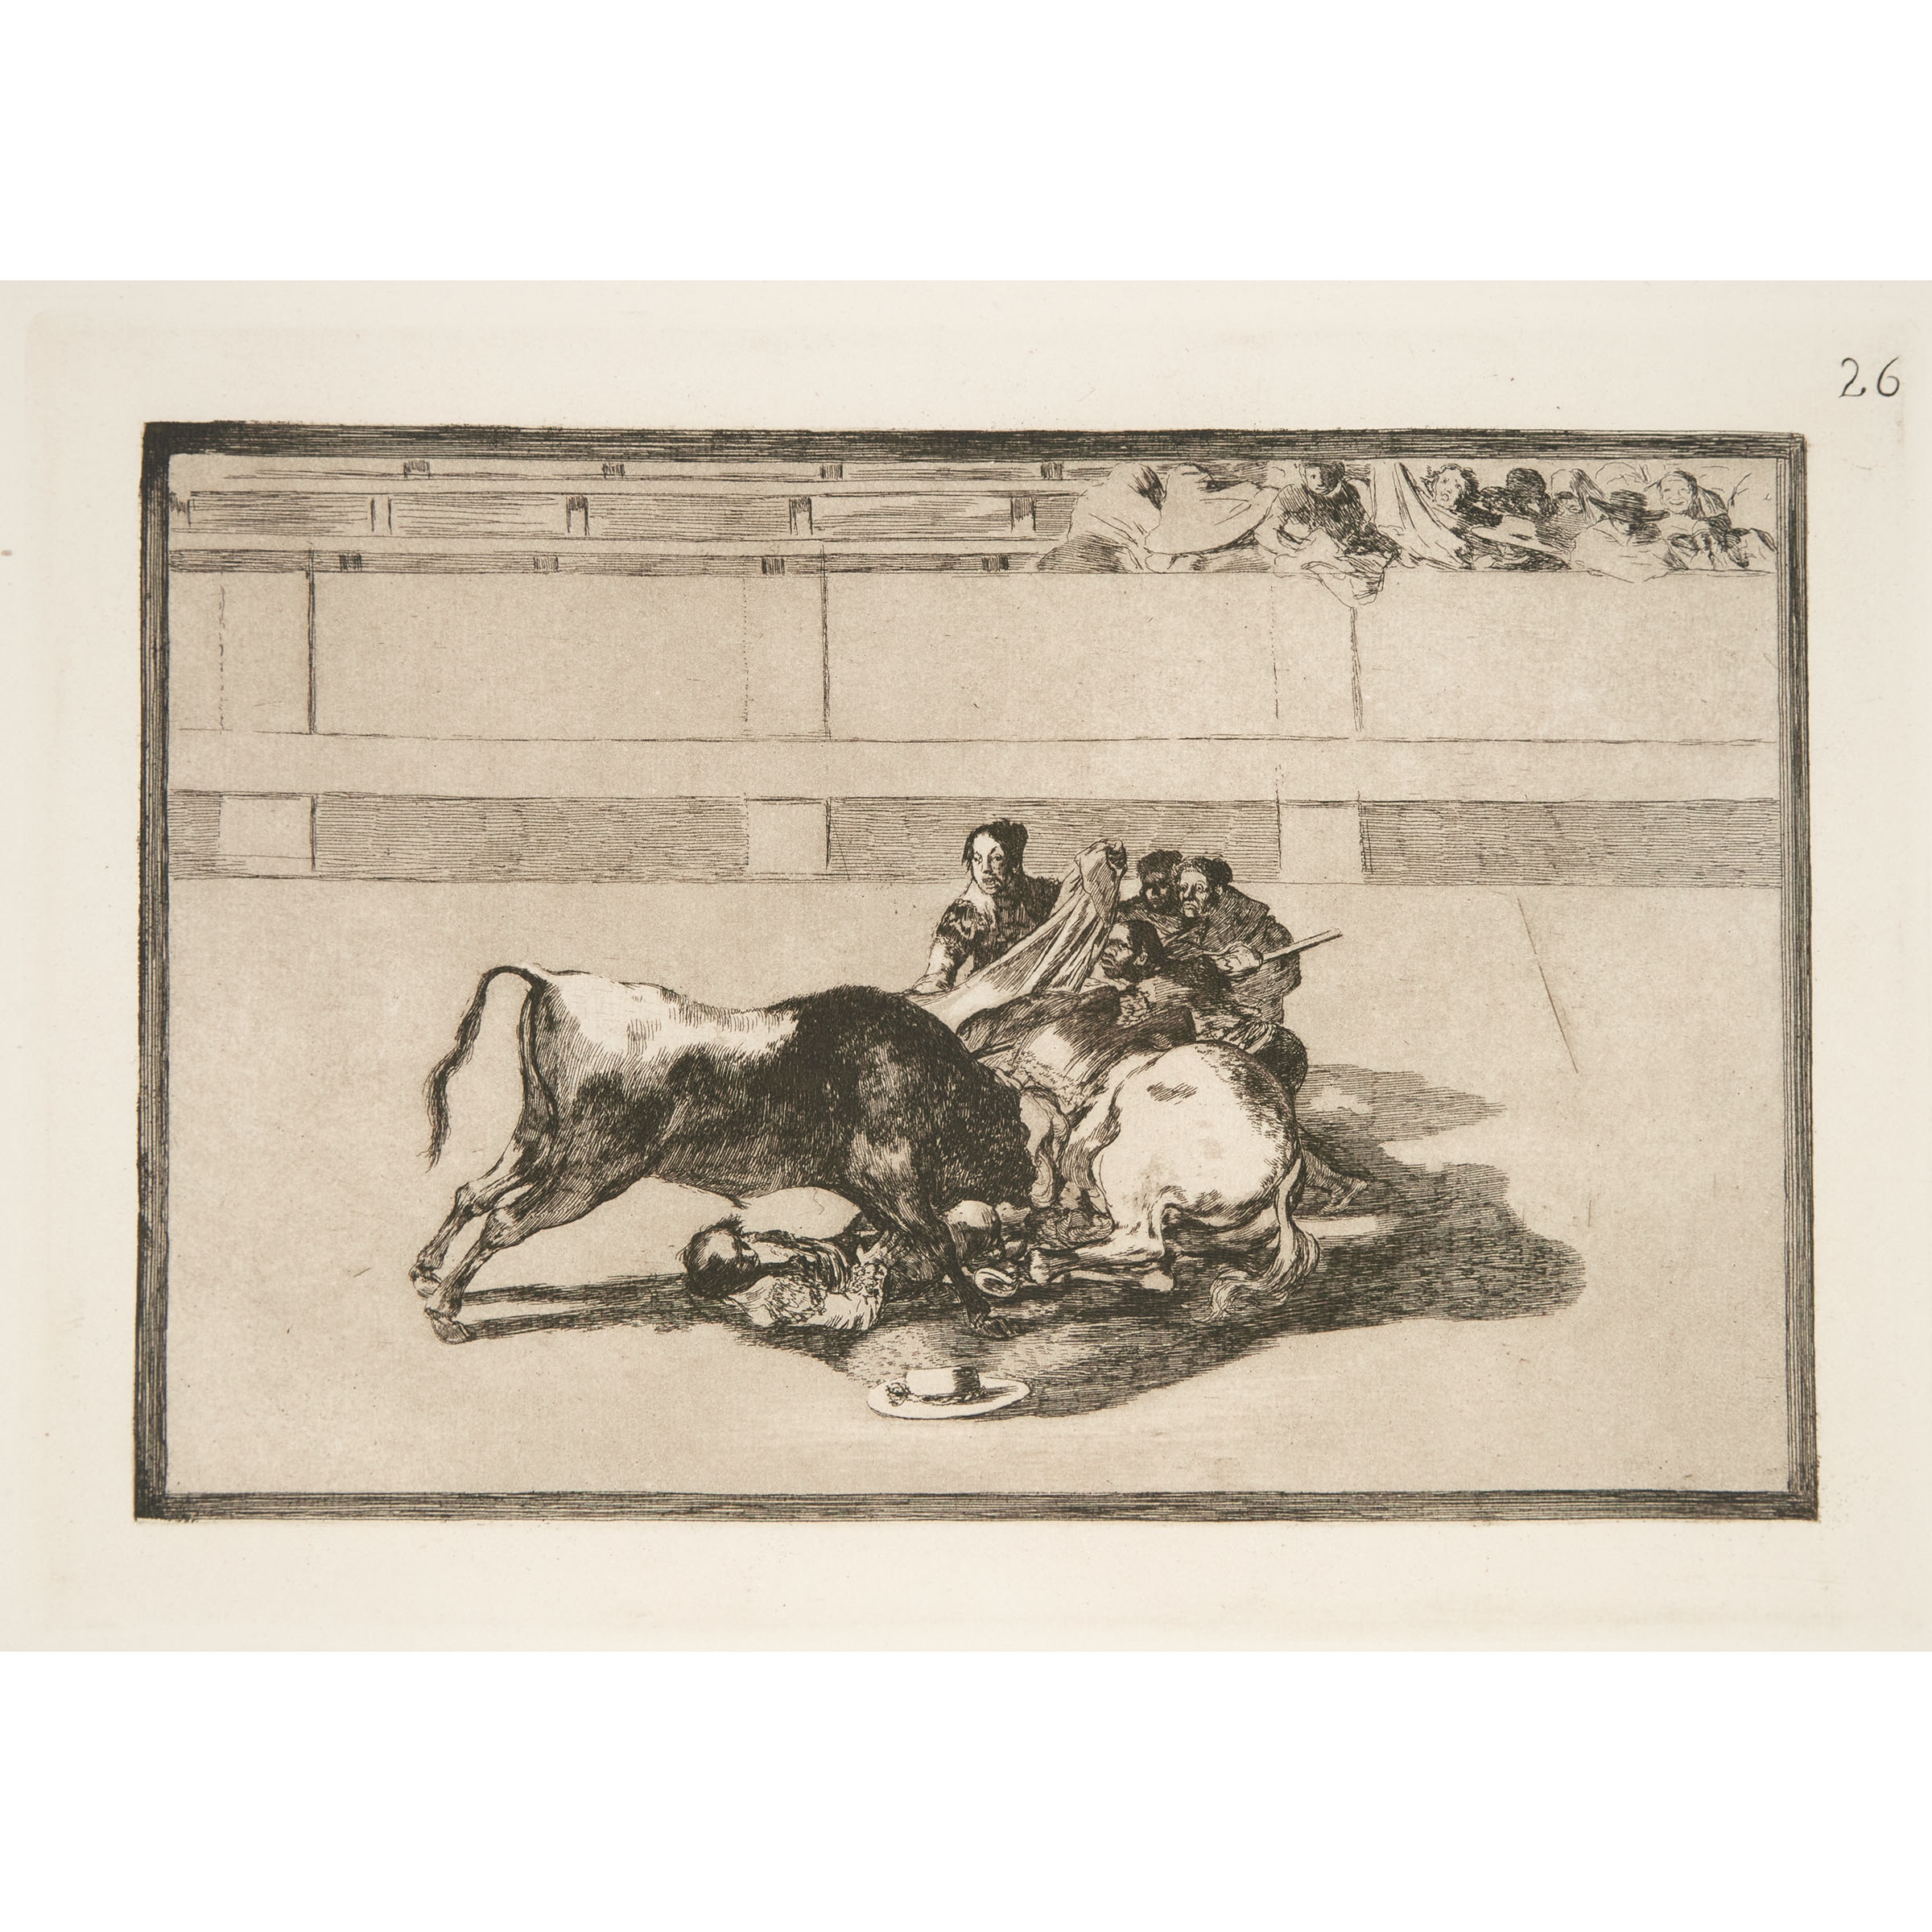 CAIDA DE UN PICADOR DE SU CABALLO DEBAJO DEL TORO, PLATE 26, FROM "LA TAUROMAQUIA," 1815-1905 [H. 229 - Francisco José de Goya y Lucientes